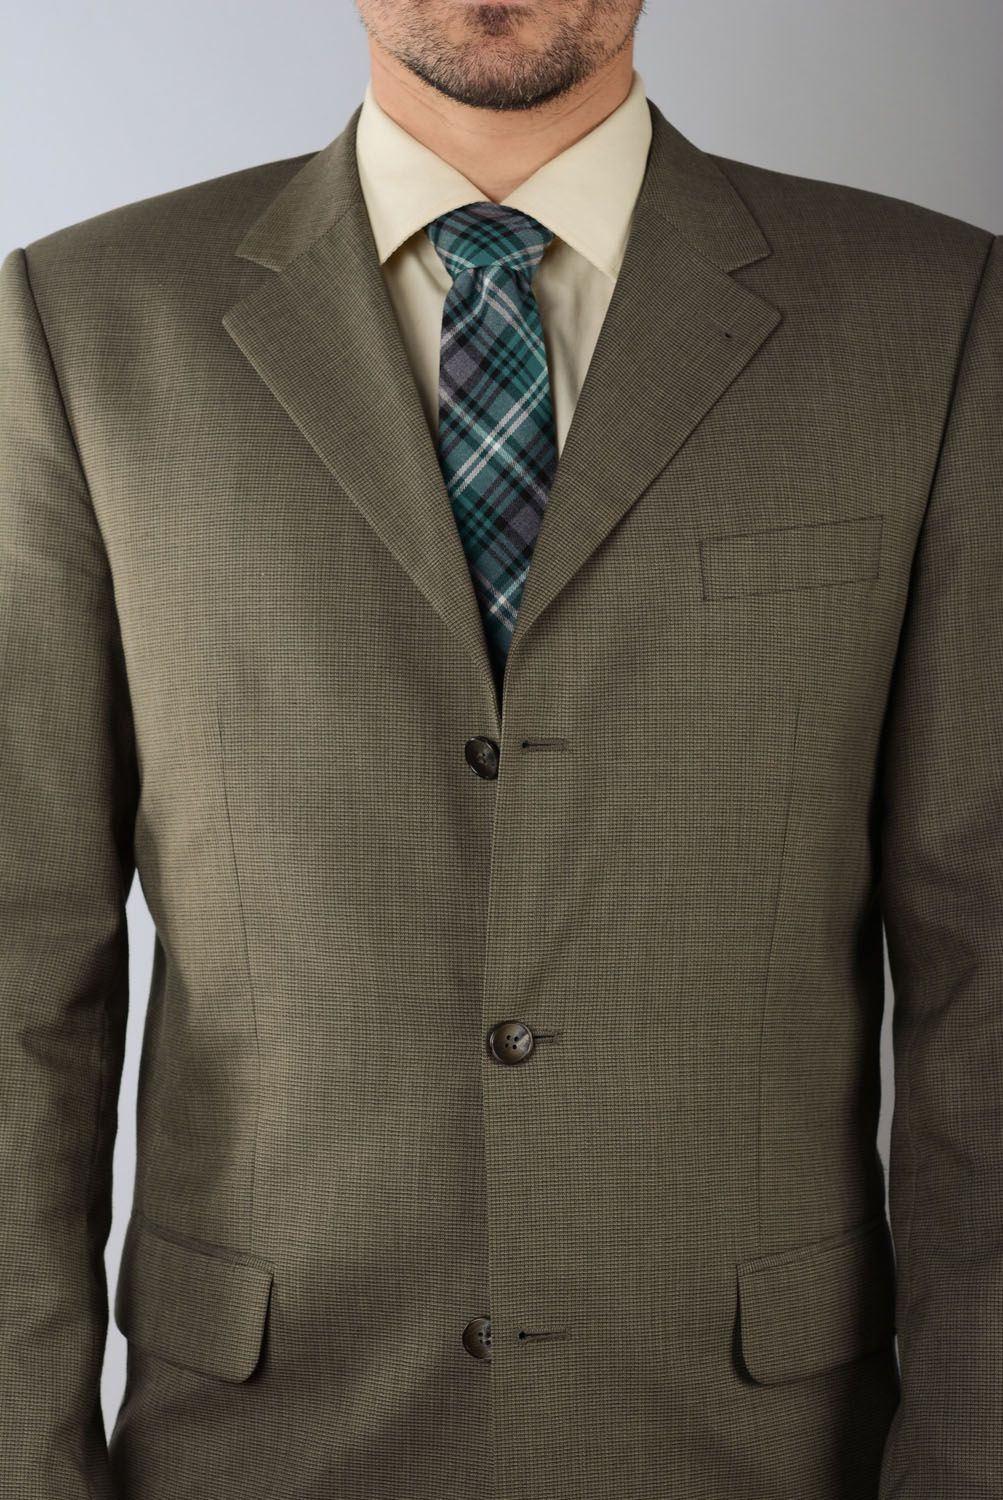 Tweed green tie photo 4